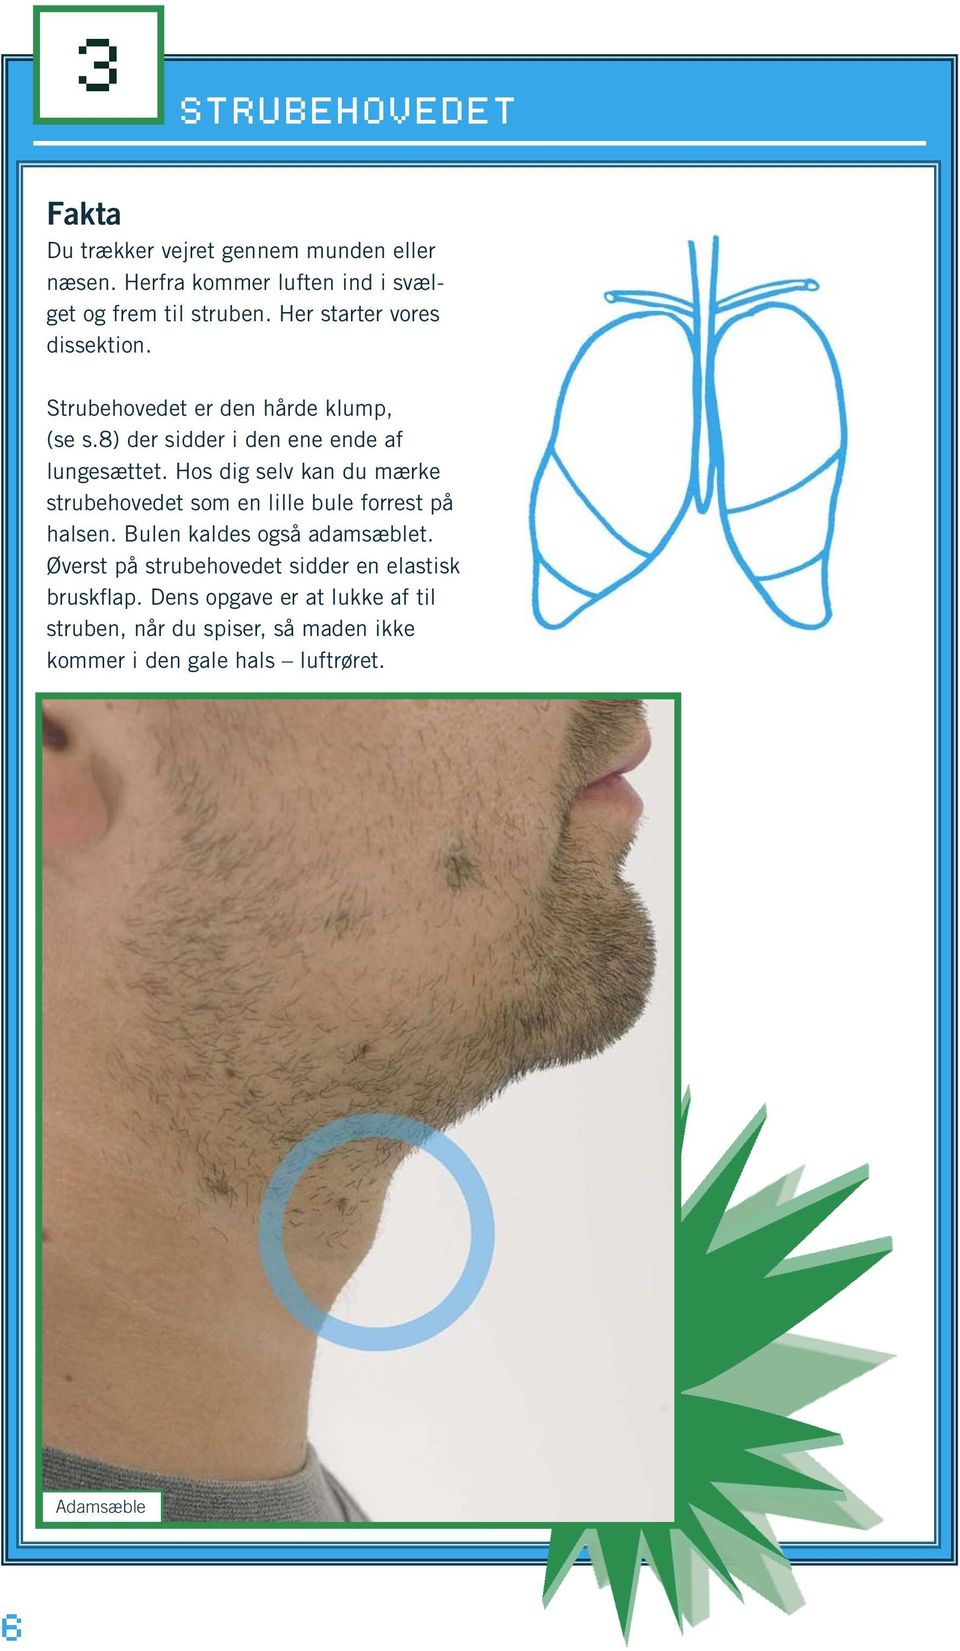 Hos dig selv kan du mærke strubehovedet som en lille bule forrest på halsen. Bulen kaldes også adamsæblet.